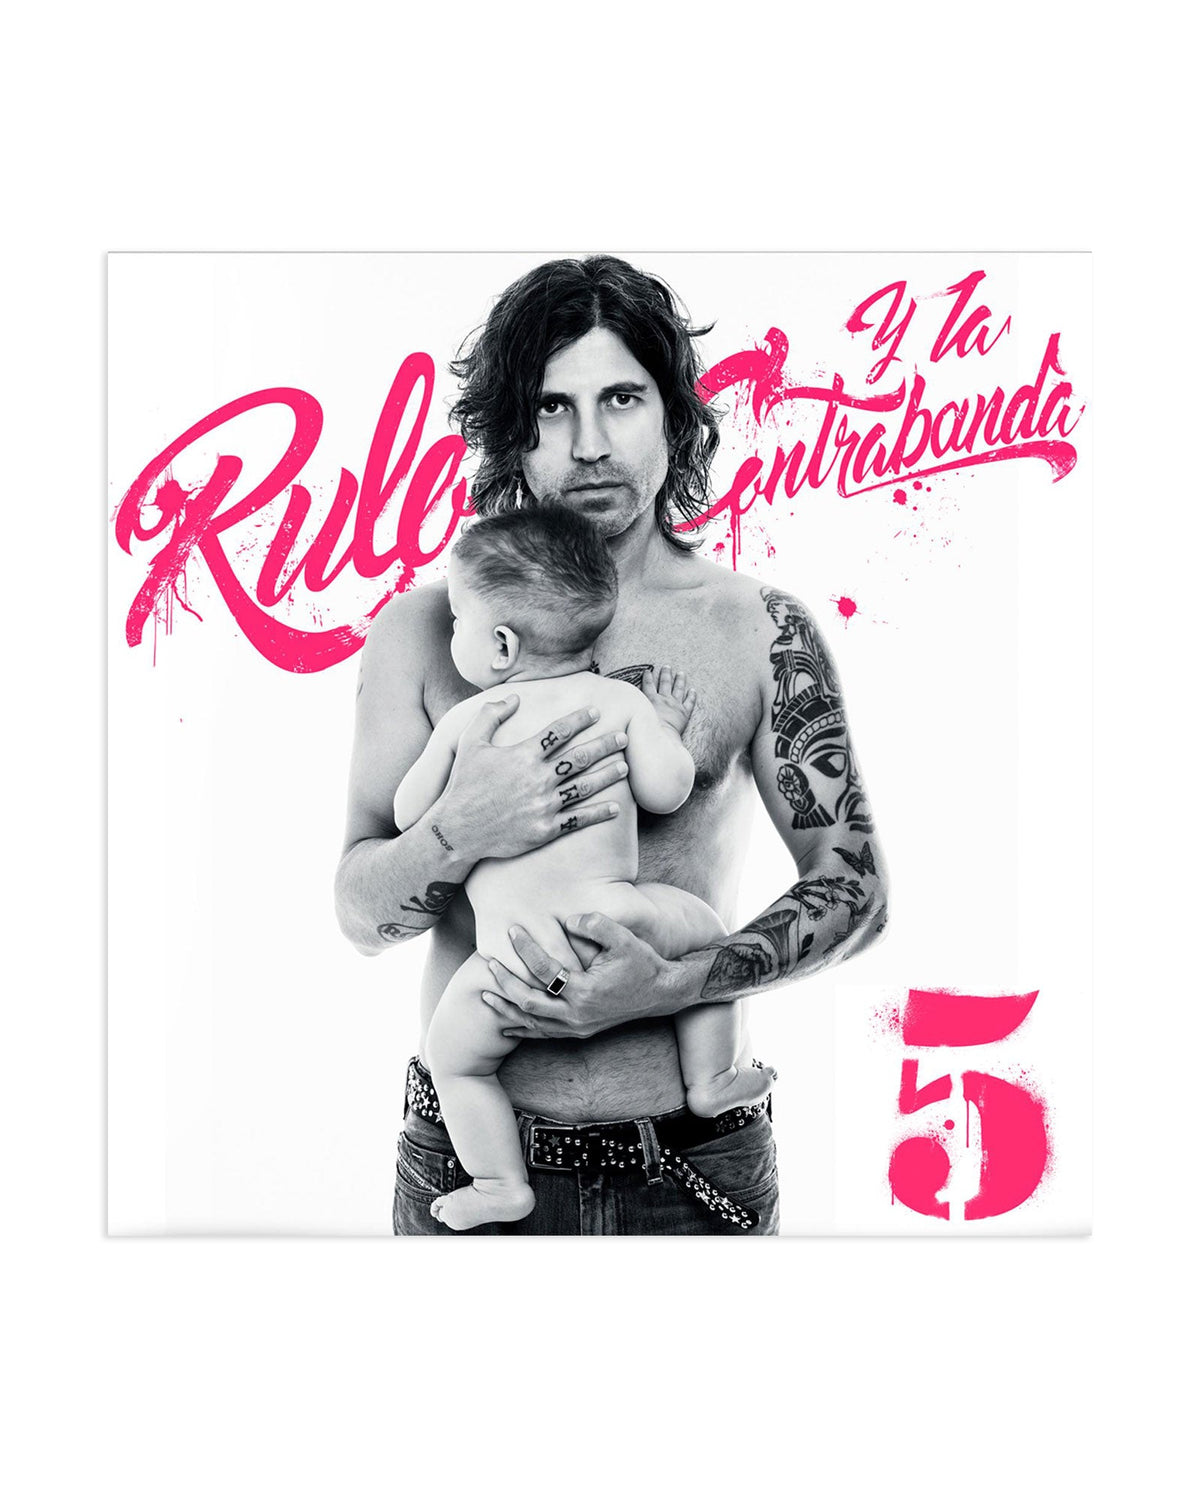 Rulo y la Contrabanda - LP Vinilo "5" + Púa + Pegatinas - D2fy · Rocktud - Rocktud